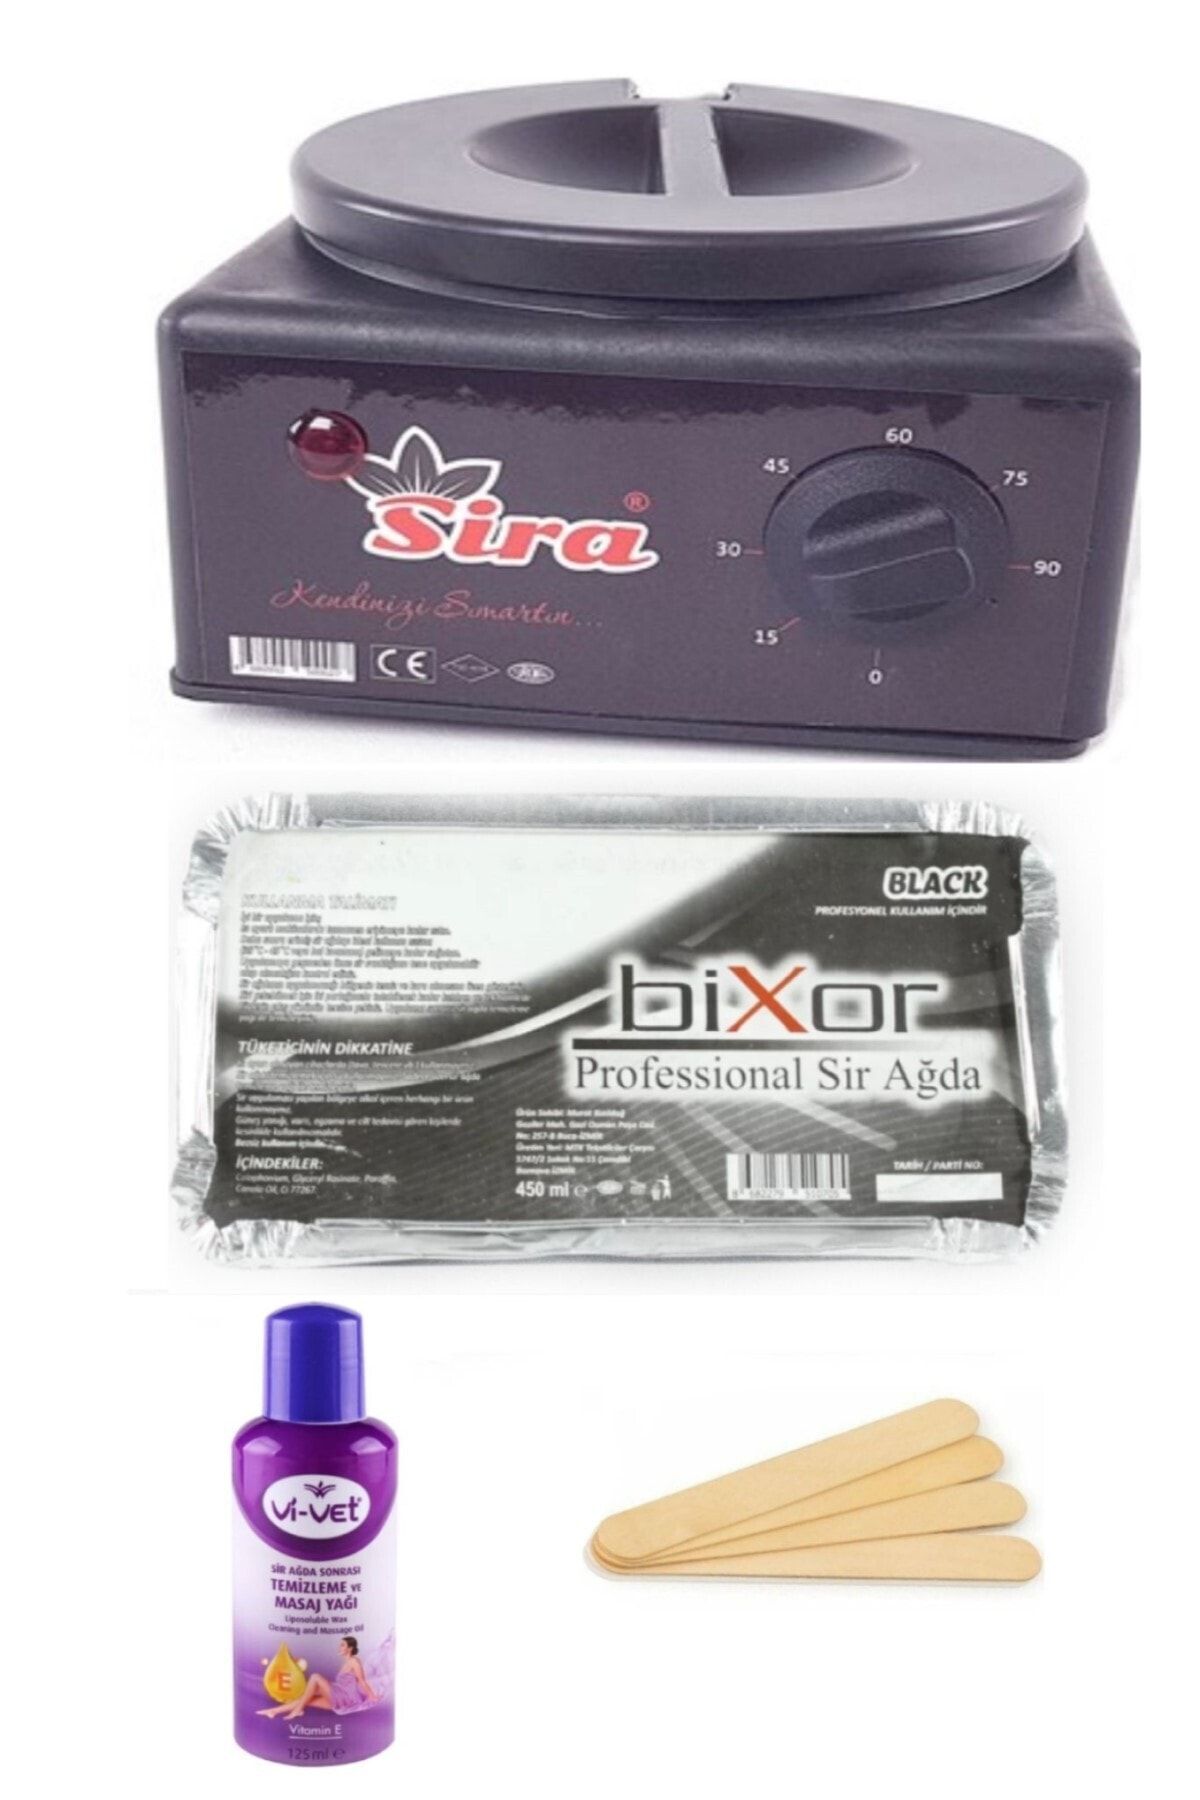 Bixor Black Kalıp Sir Ağda Seti Isıtıcı Kazanlı – Black Waxing Set With Wax Heater